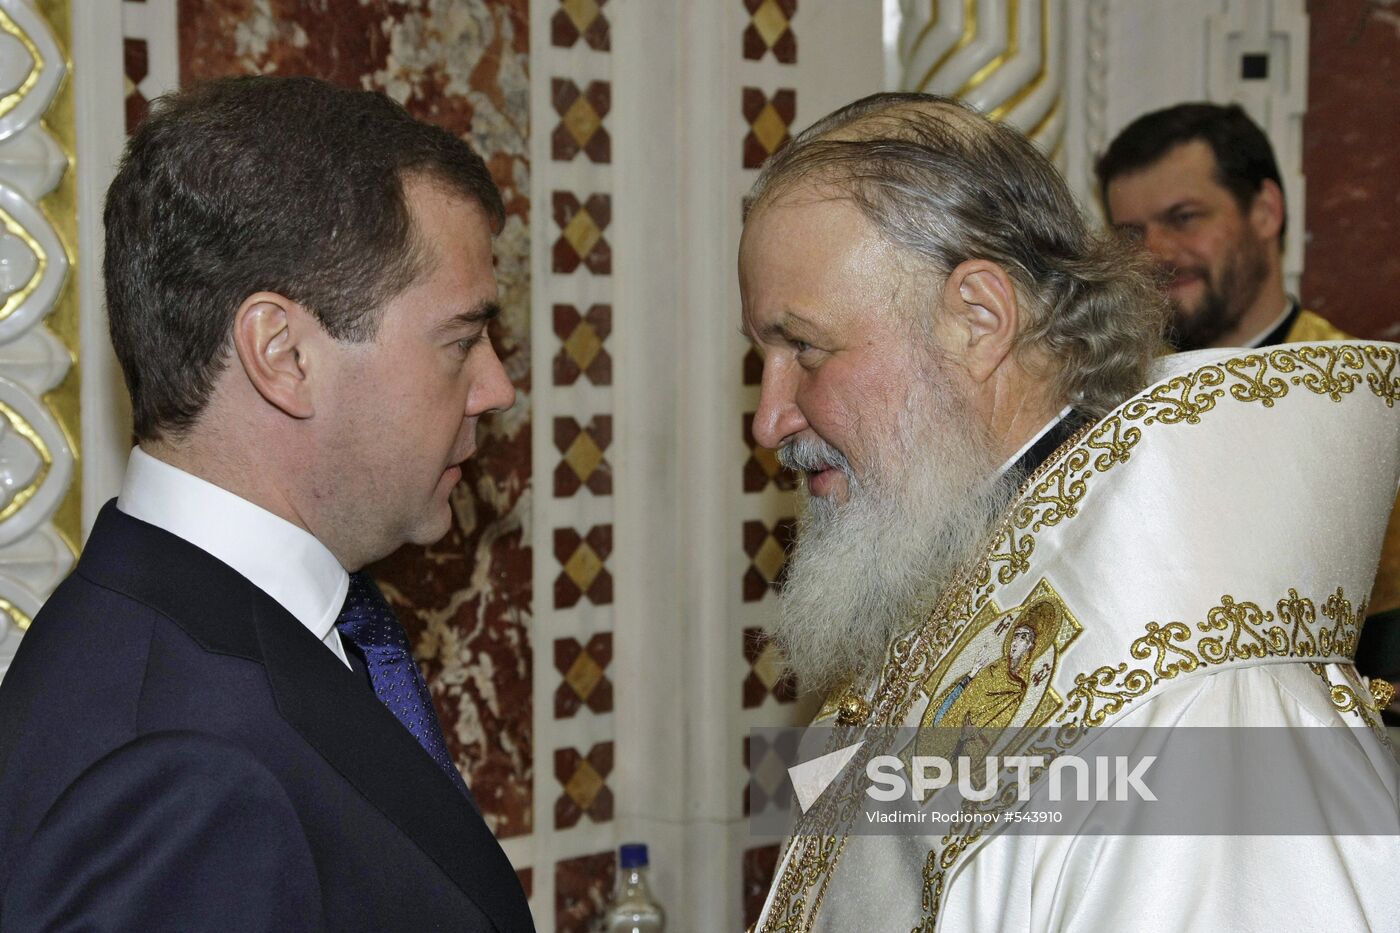 Dmitry Medvedev attends Christmas service